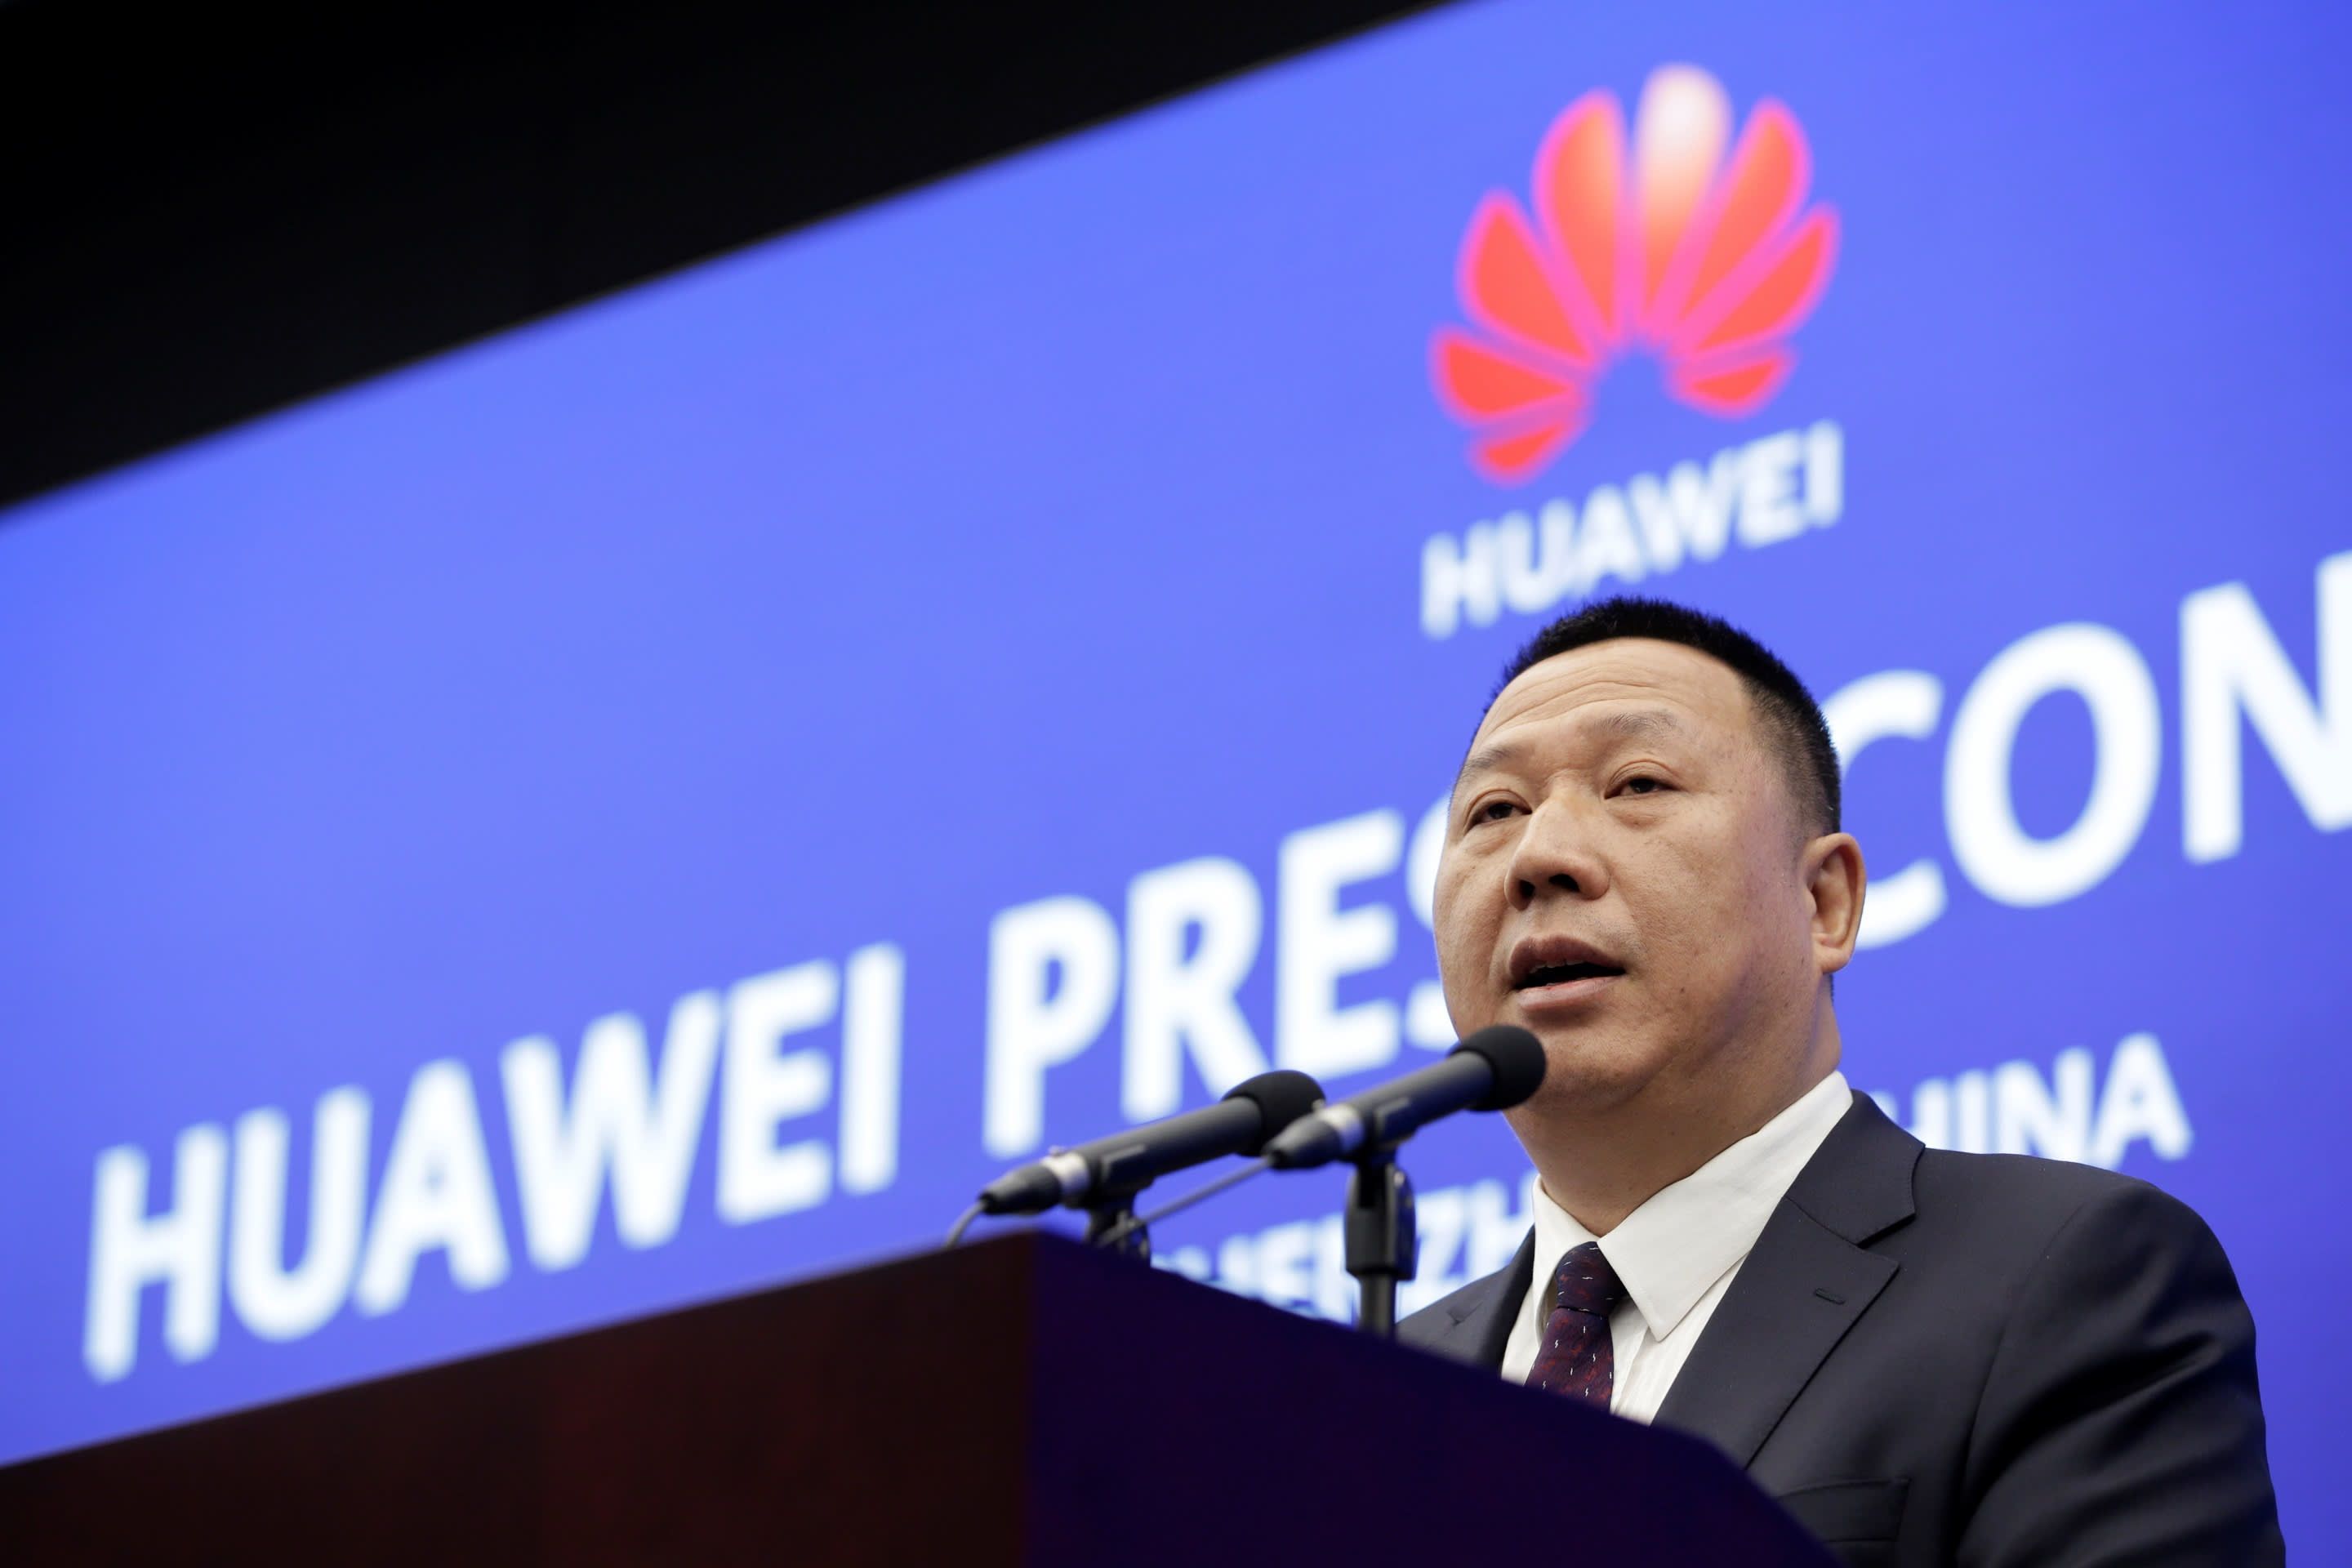 ก็มาดิครับ… | Huawei งัดข้อสุดกำลัง เร่งศาลตัดสินสหรัฐฯ ฐานกีดกันทางการค้า